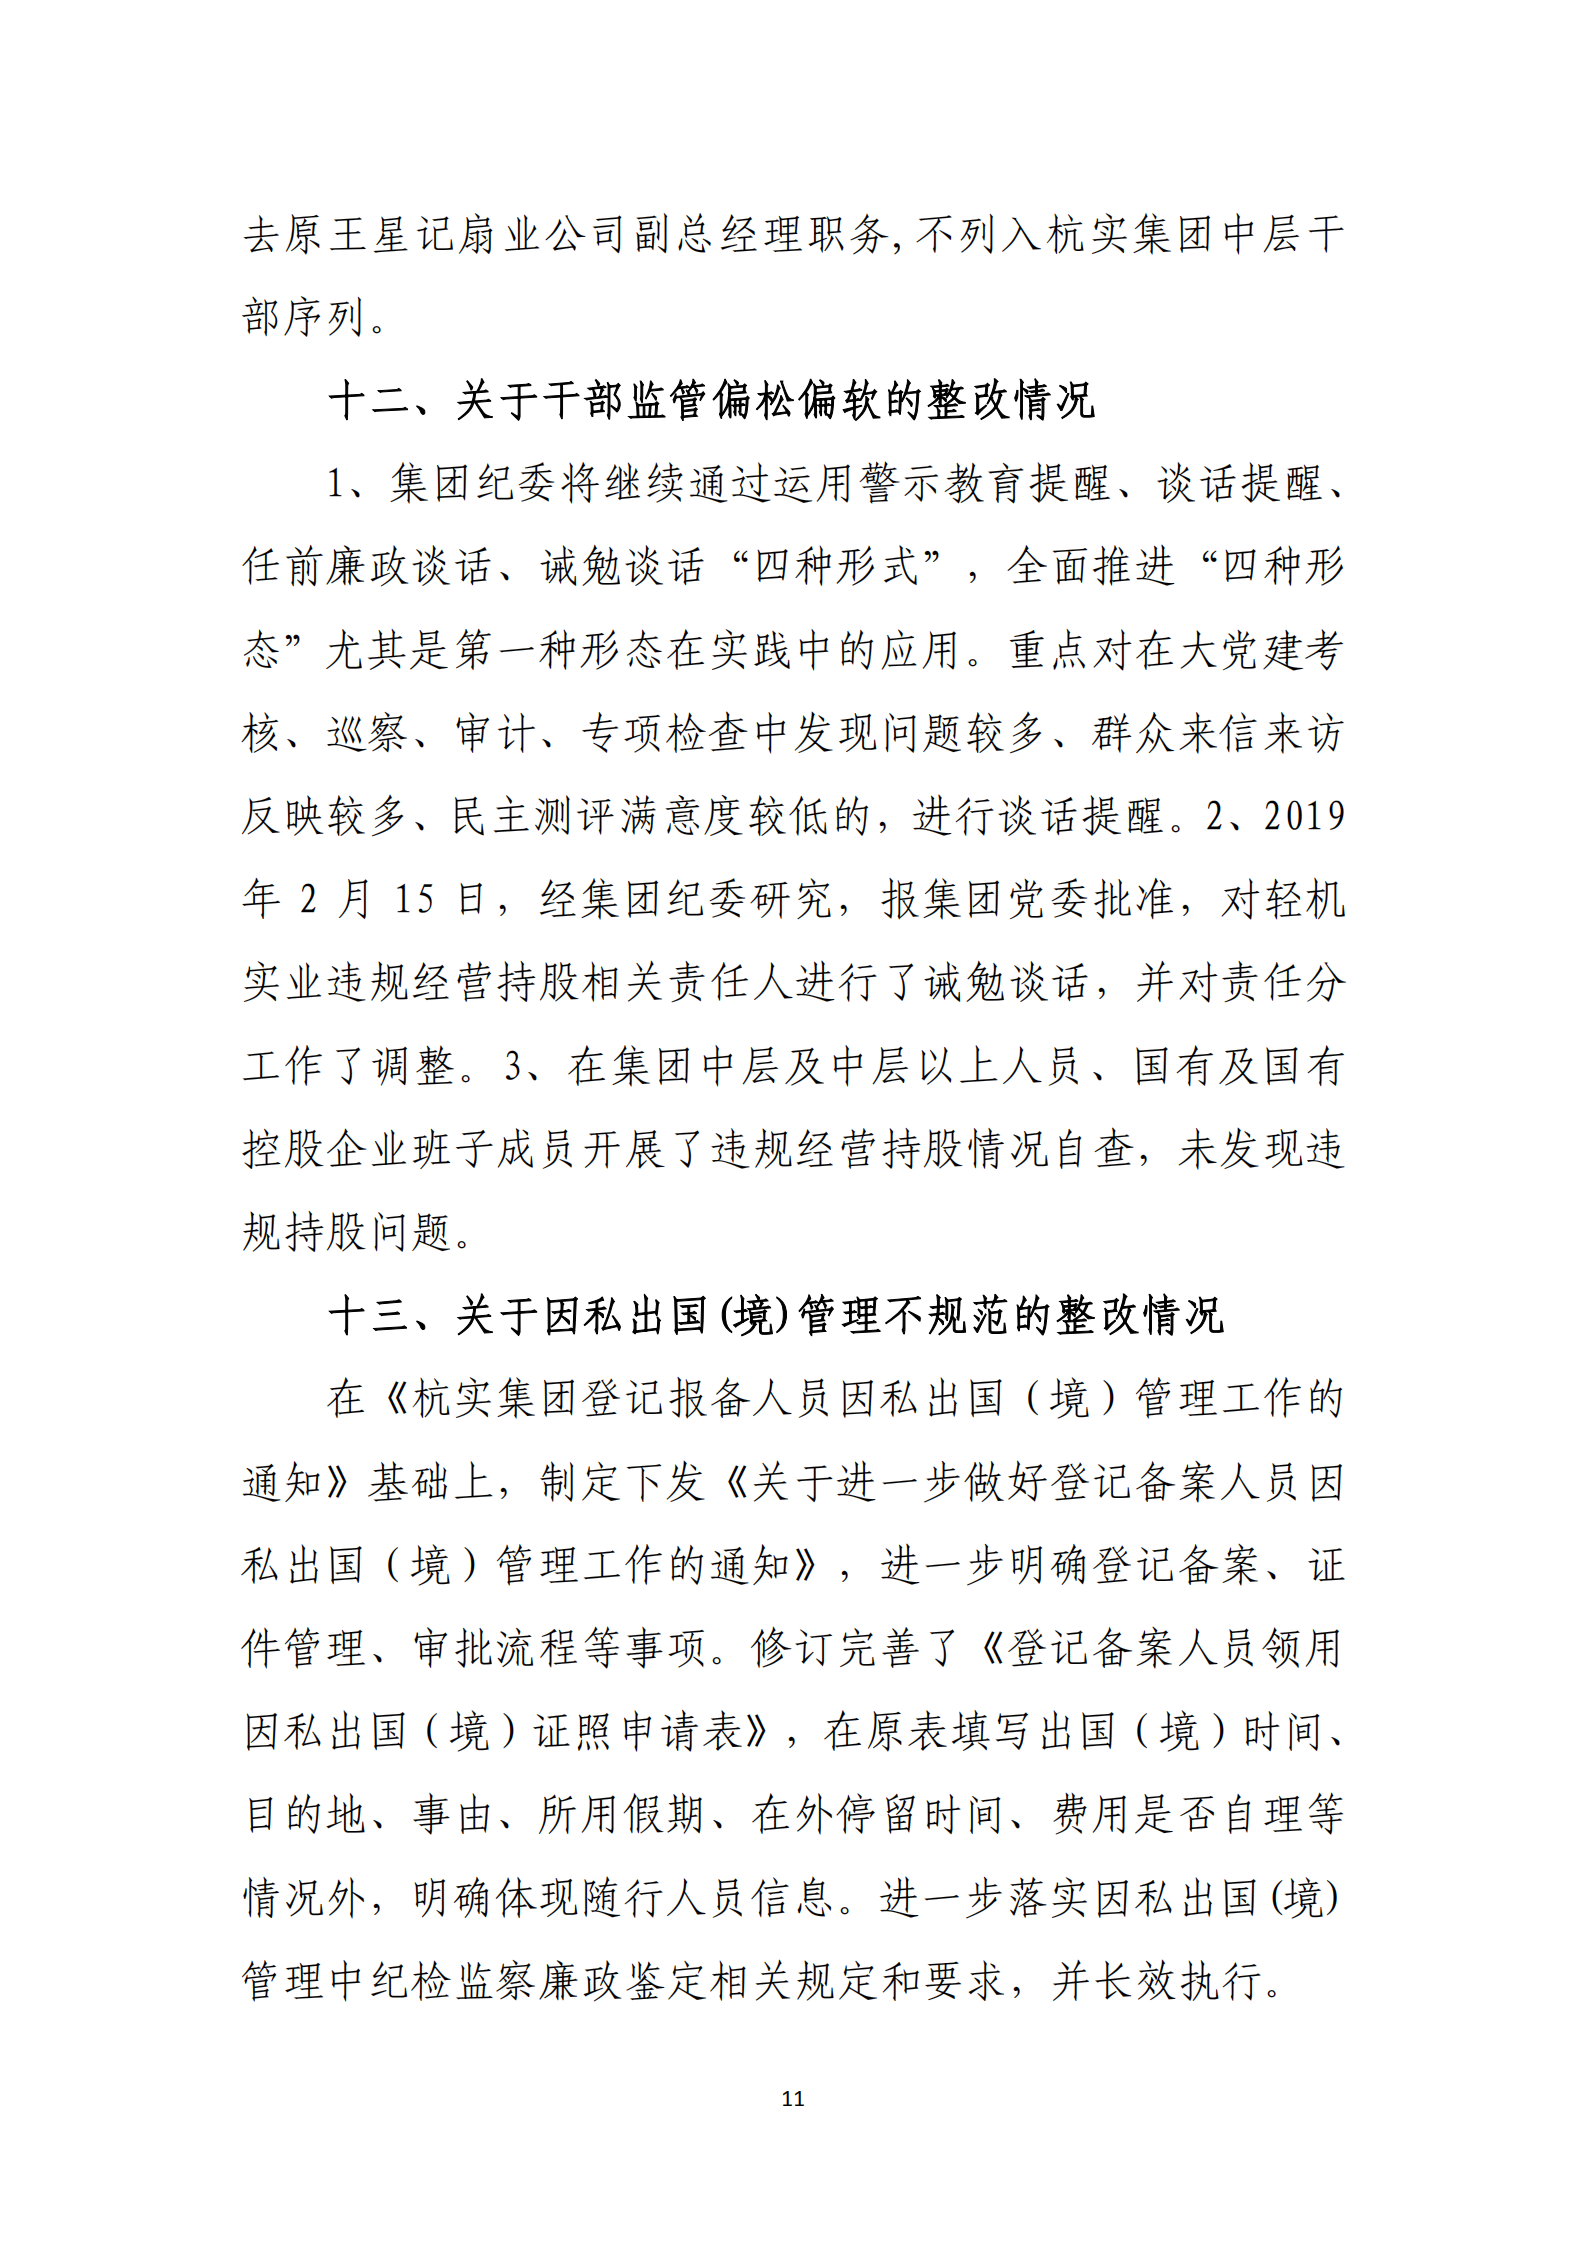 乐虎国际游戏官网党委关于巡察整改情况的通报_10.png